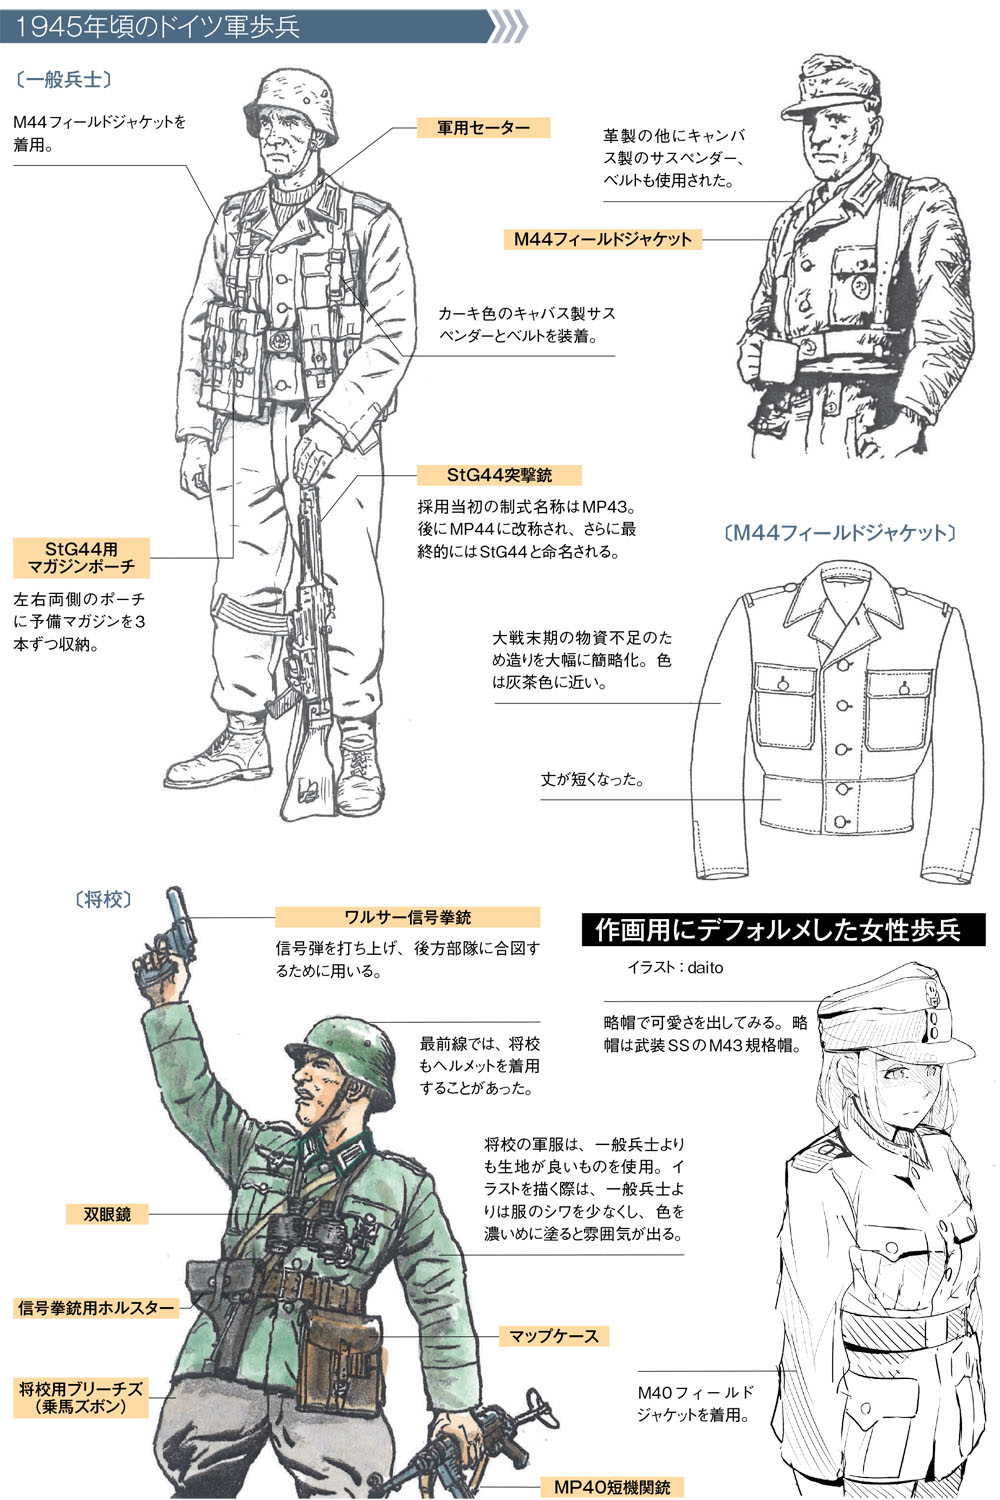 銃の持ち方 構え方は正確に描写しよう 作画のための第二次大戦軍服 軍装資料 第3回 Pictures